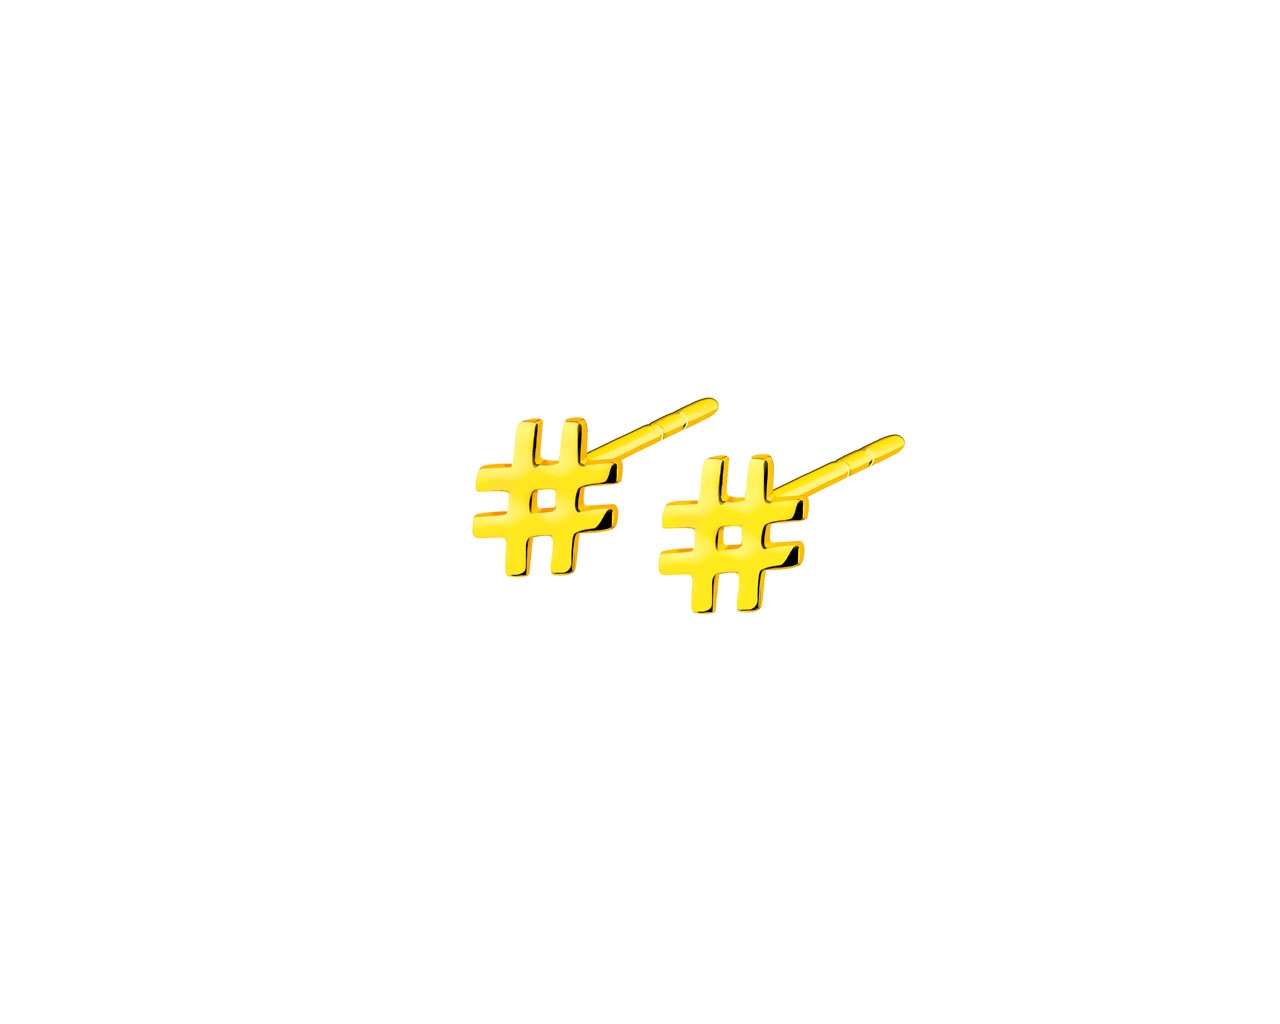 Złote kolczyki - hashtagi